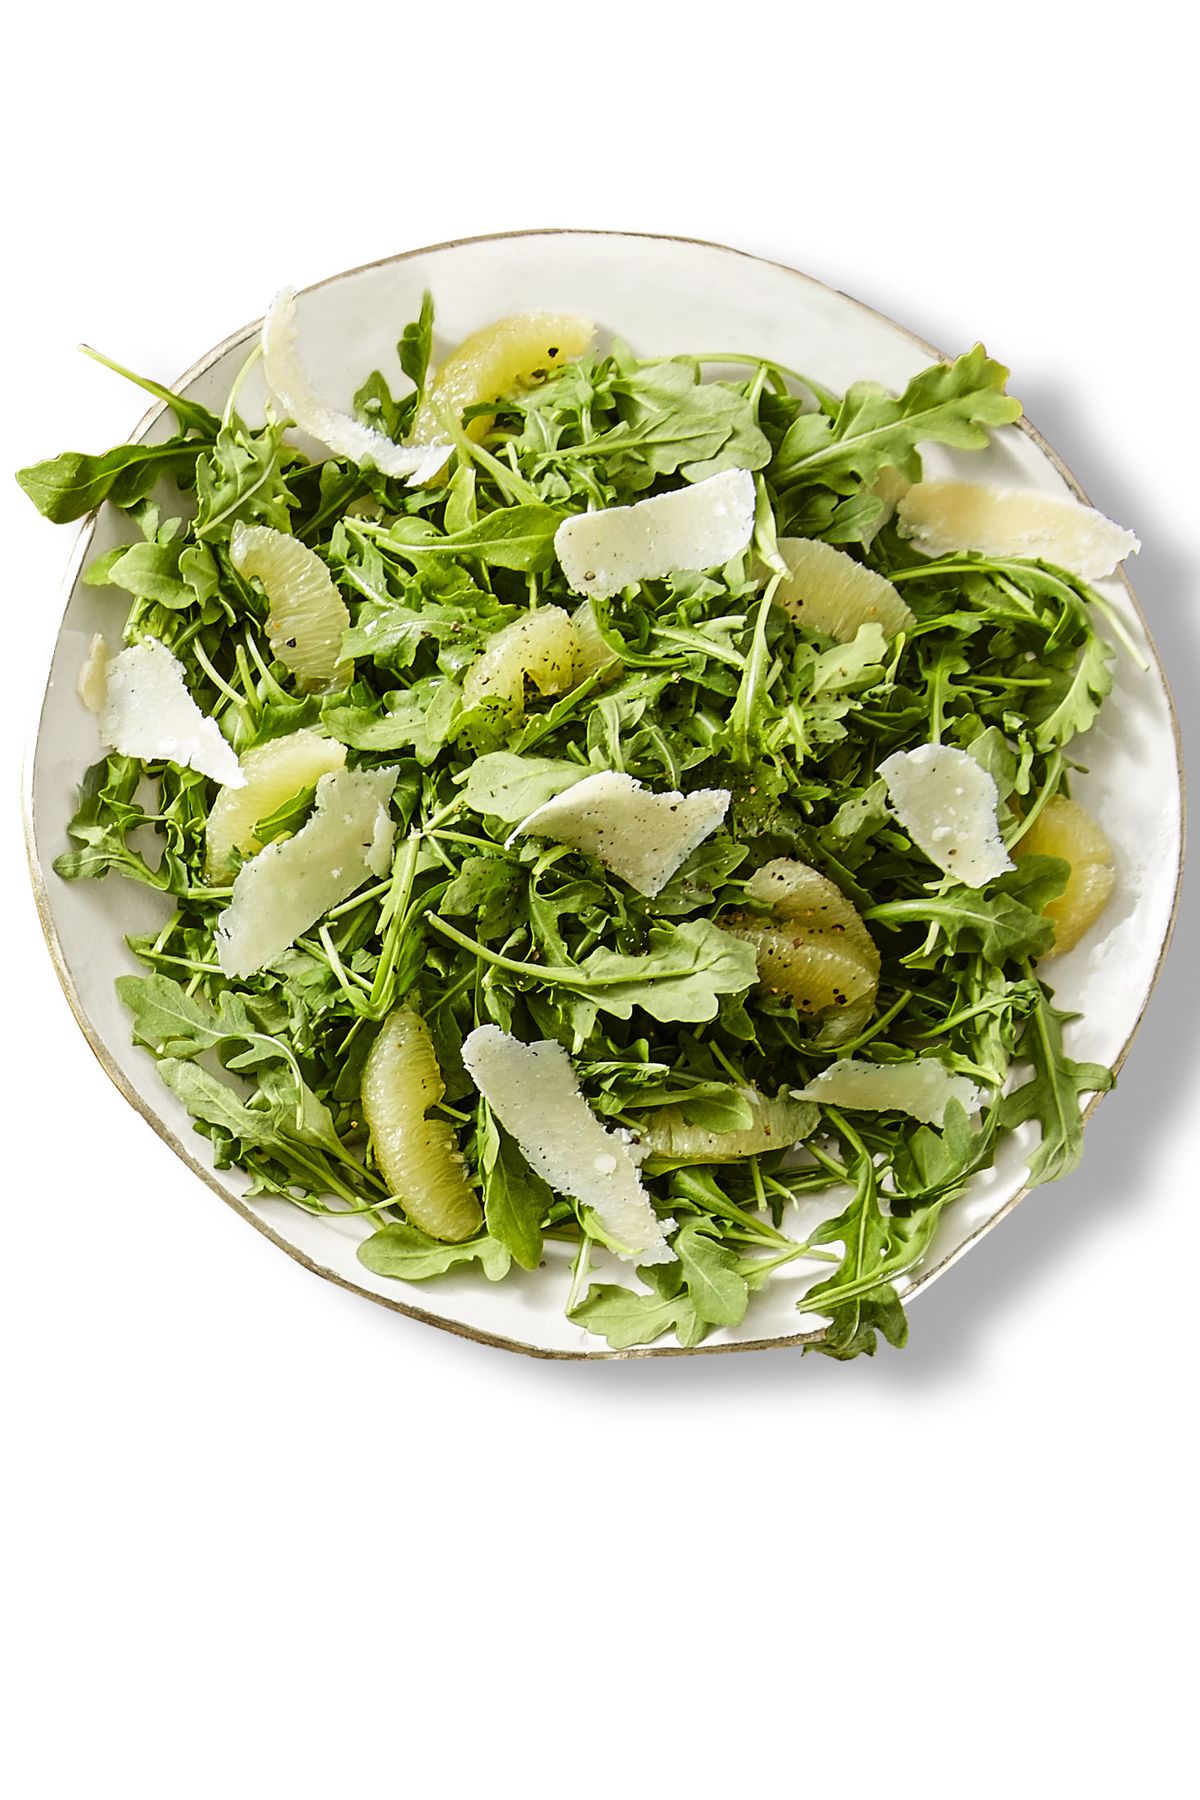 lemon arugula salad on a plate